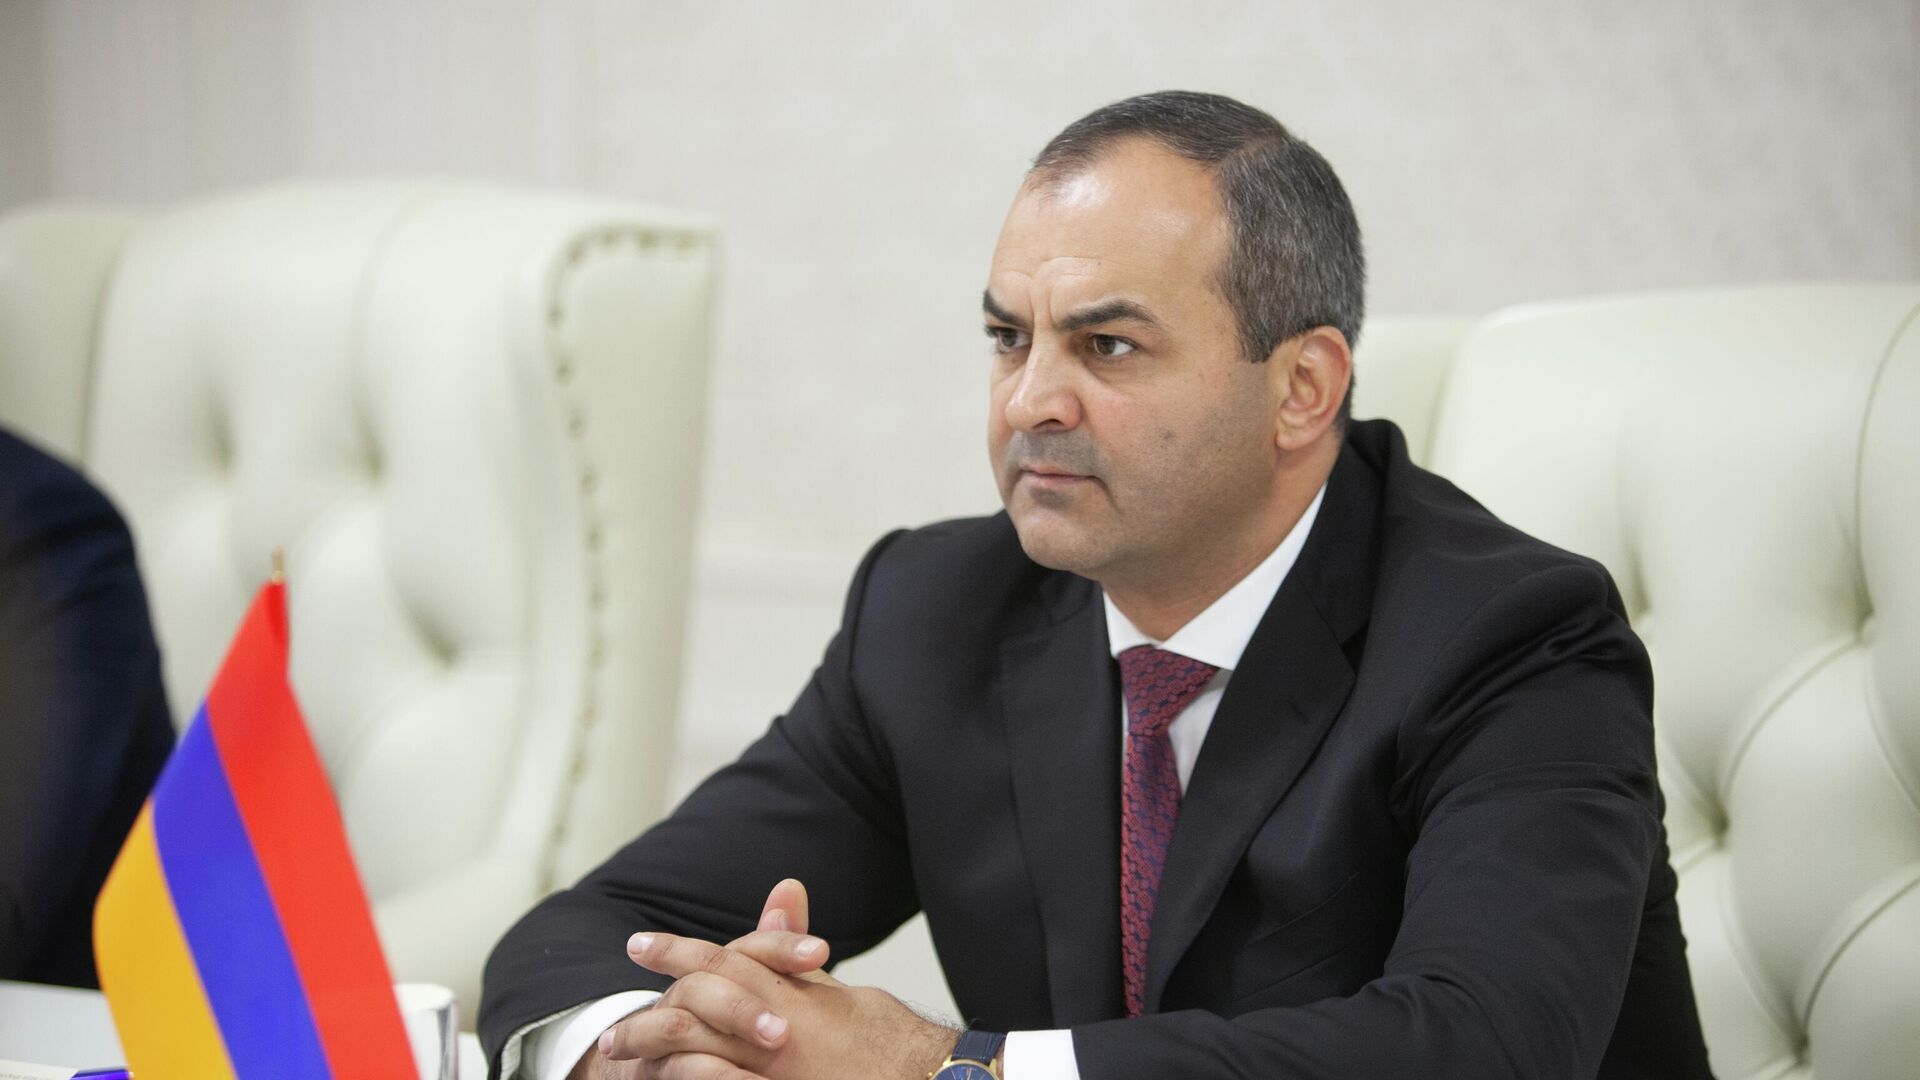 Бывший генеральный прокурор Армении Артур Давтян требует отставки Никола Пашиняна